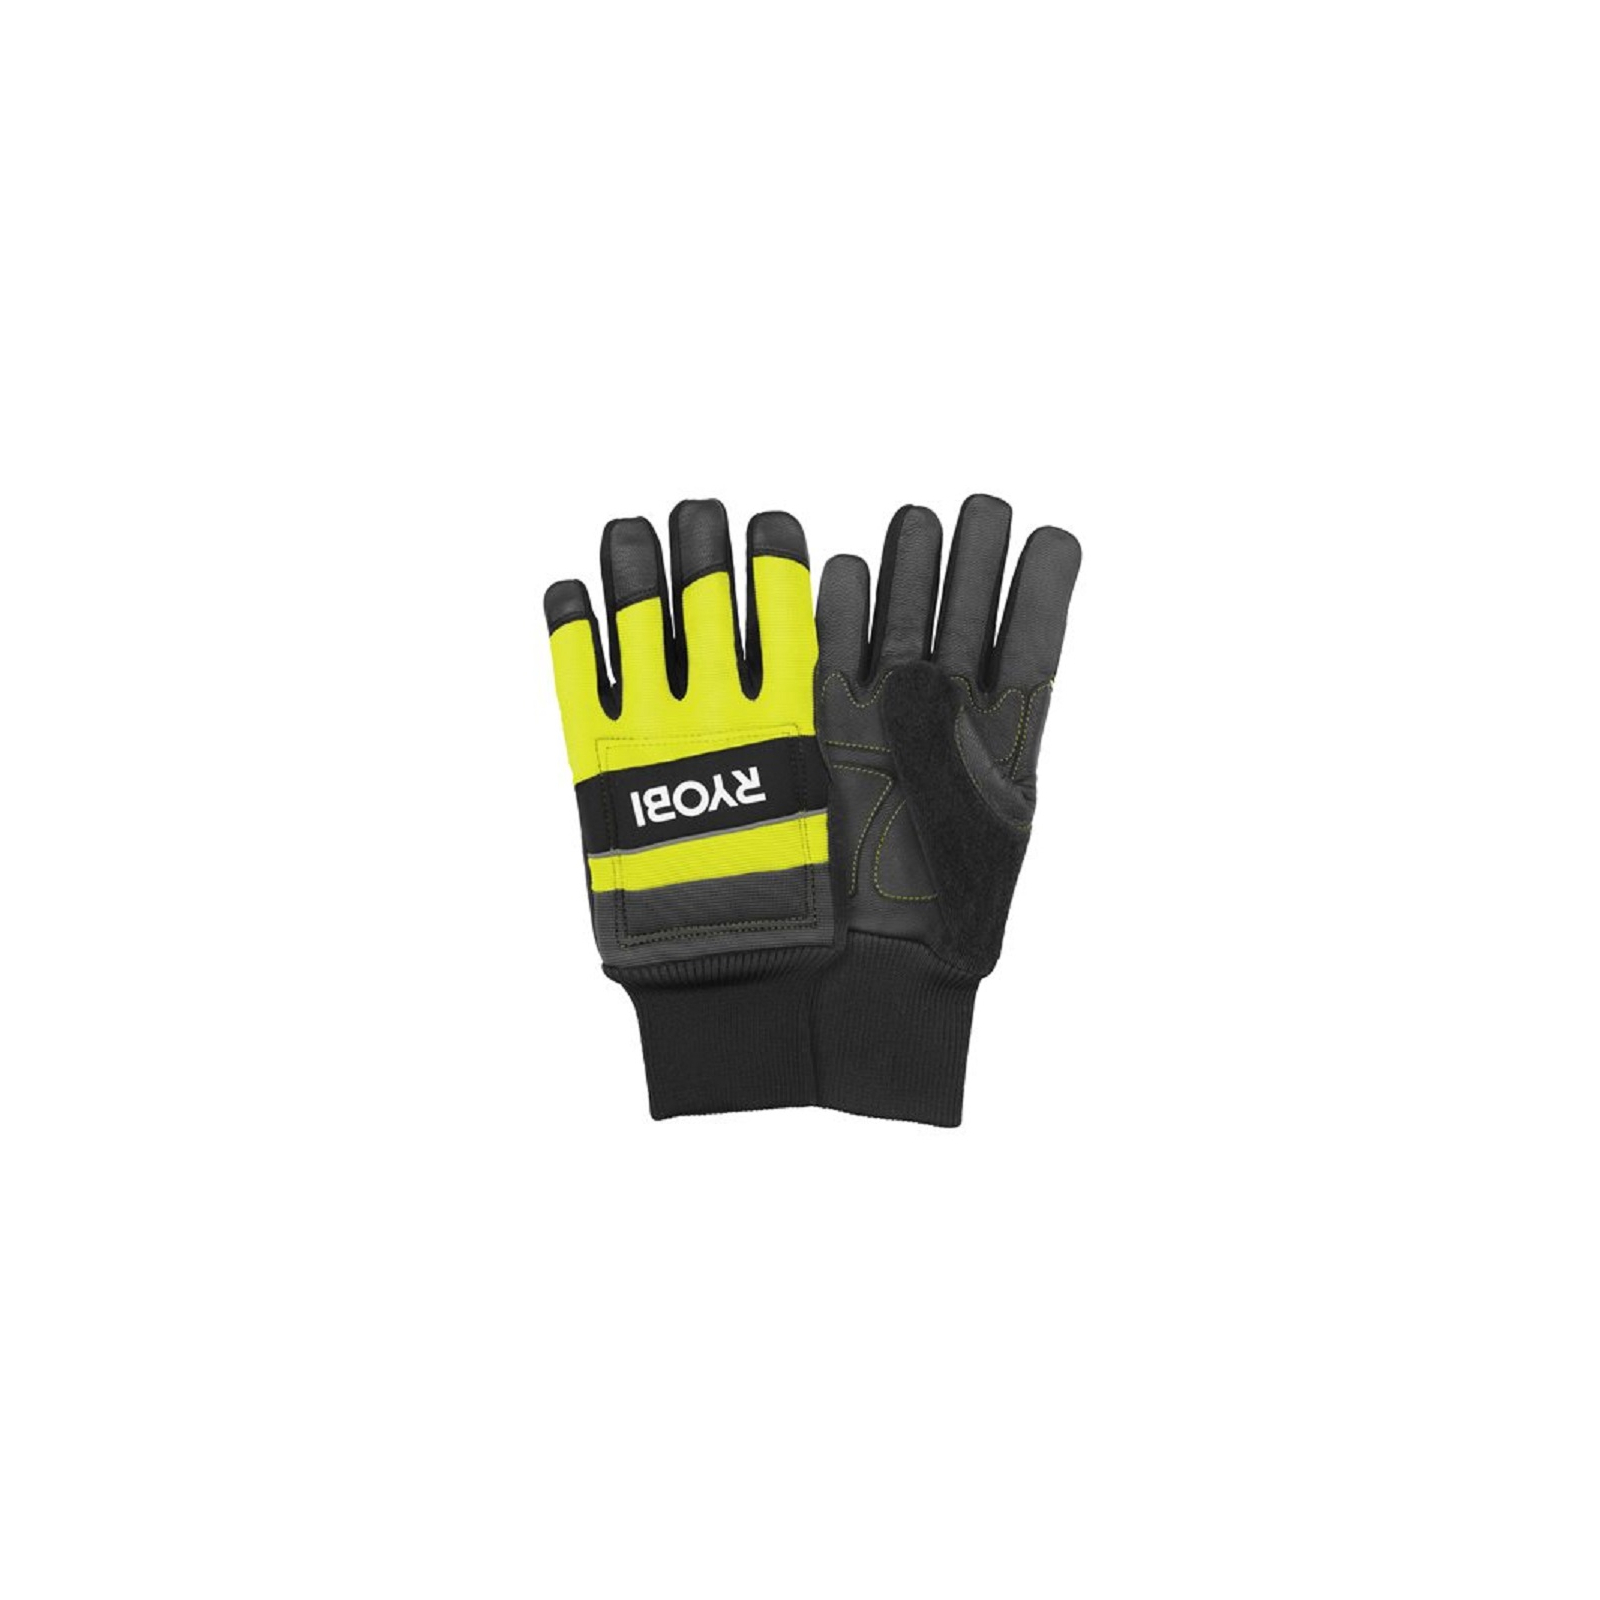 Защитные перчатки Ryobi RAC258M для работы с цепной пилой, влагозащита, р. М (5132005710) изображение 2